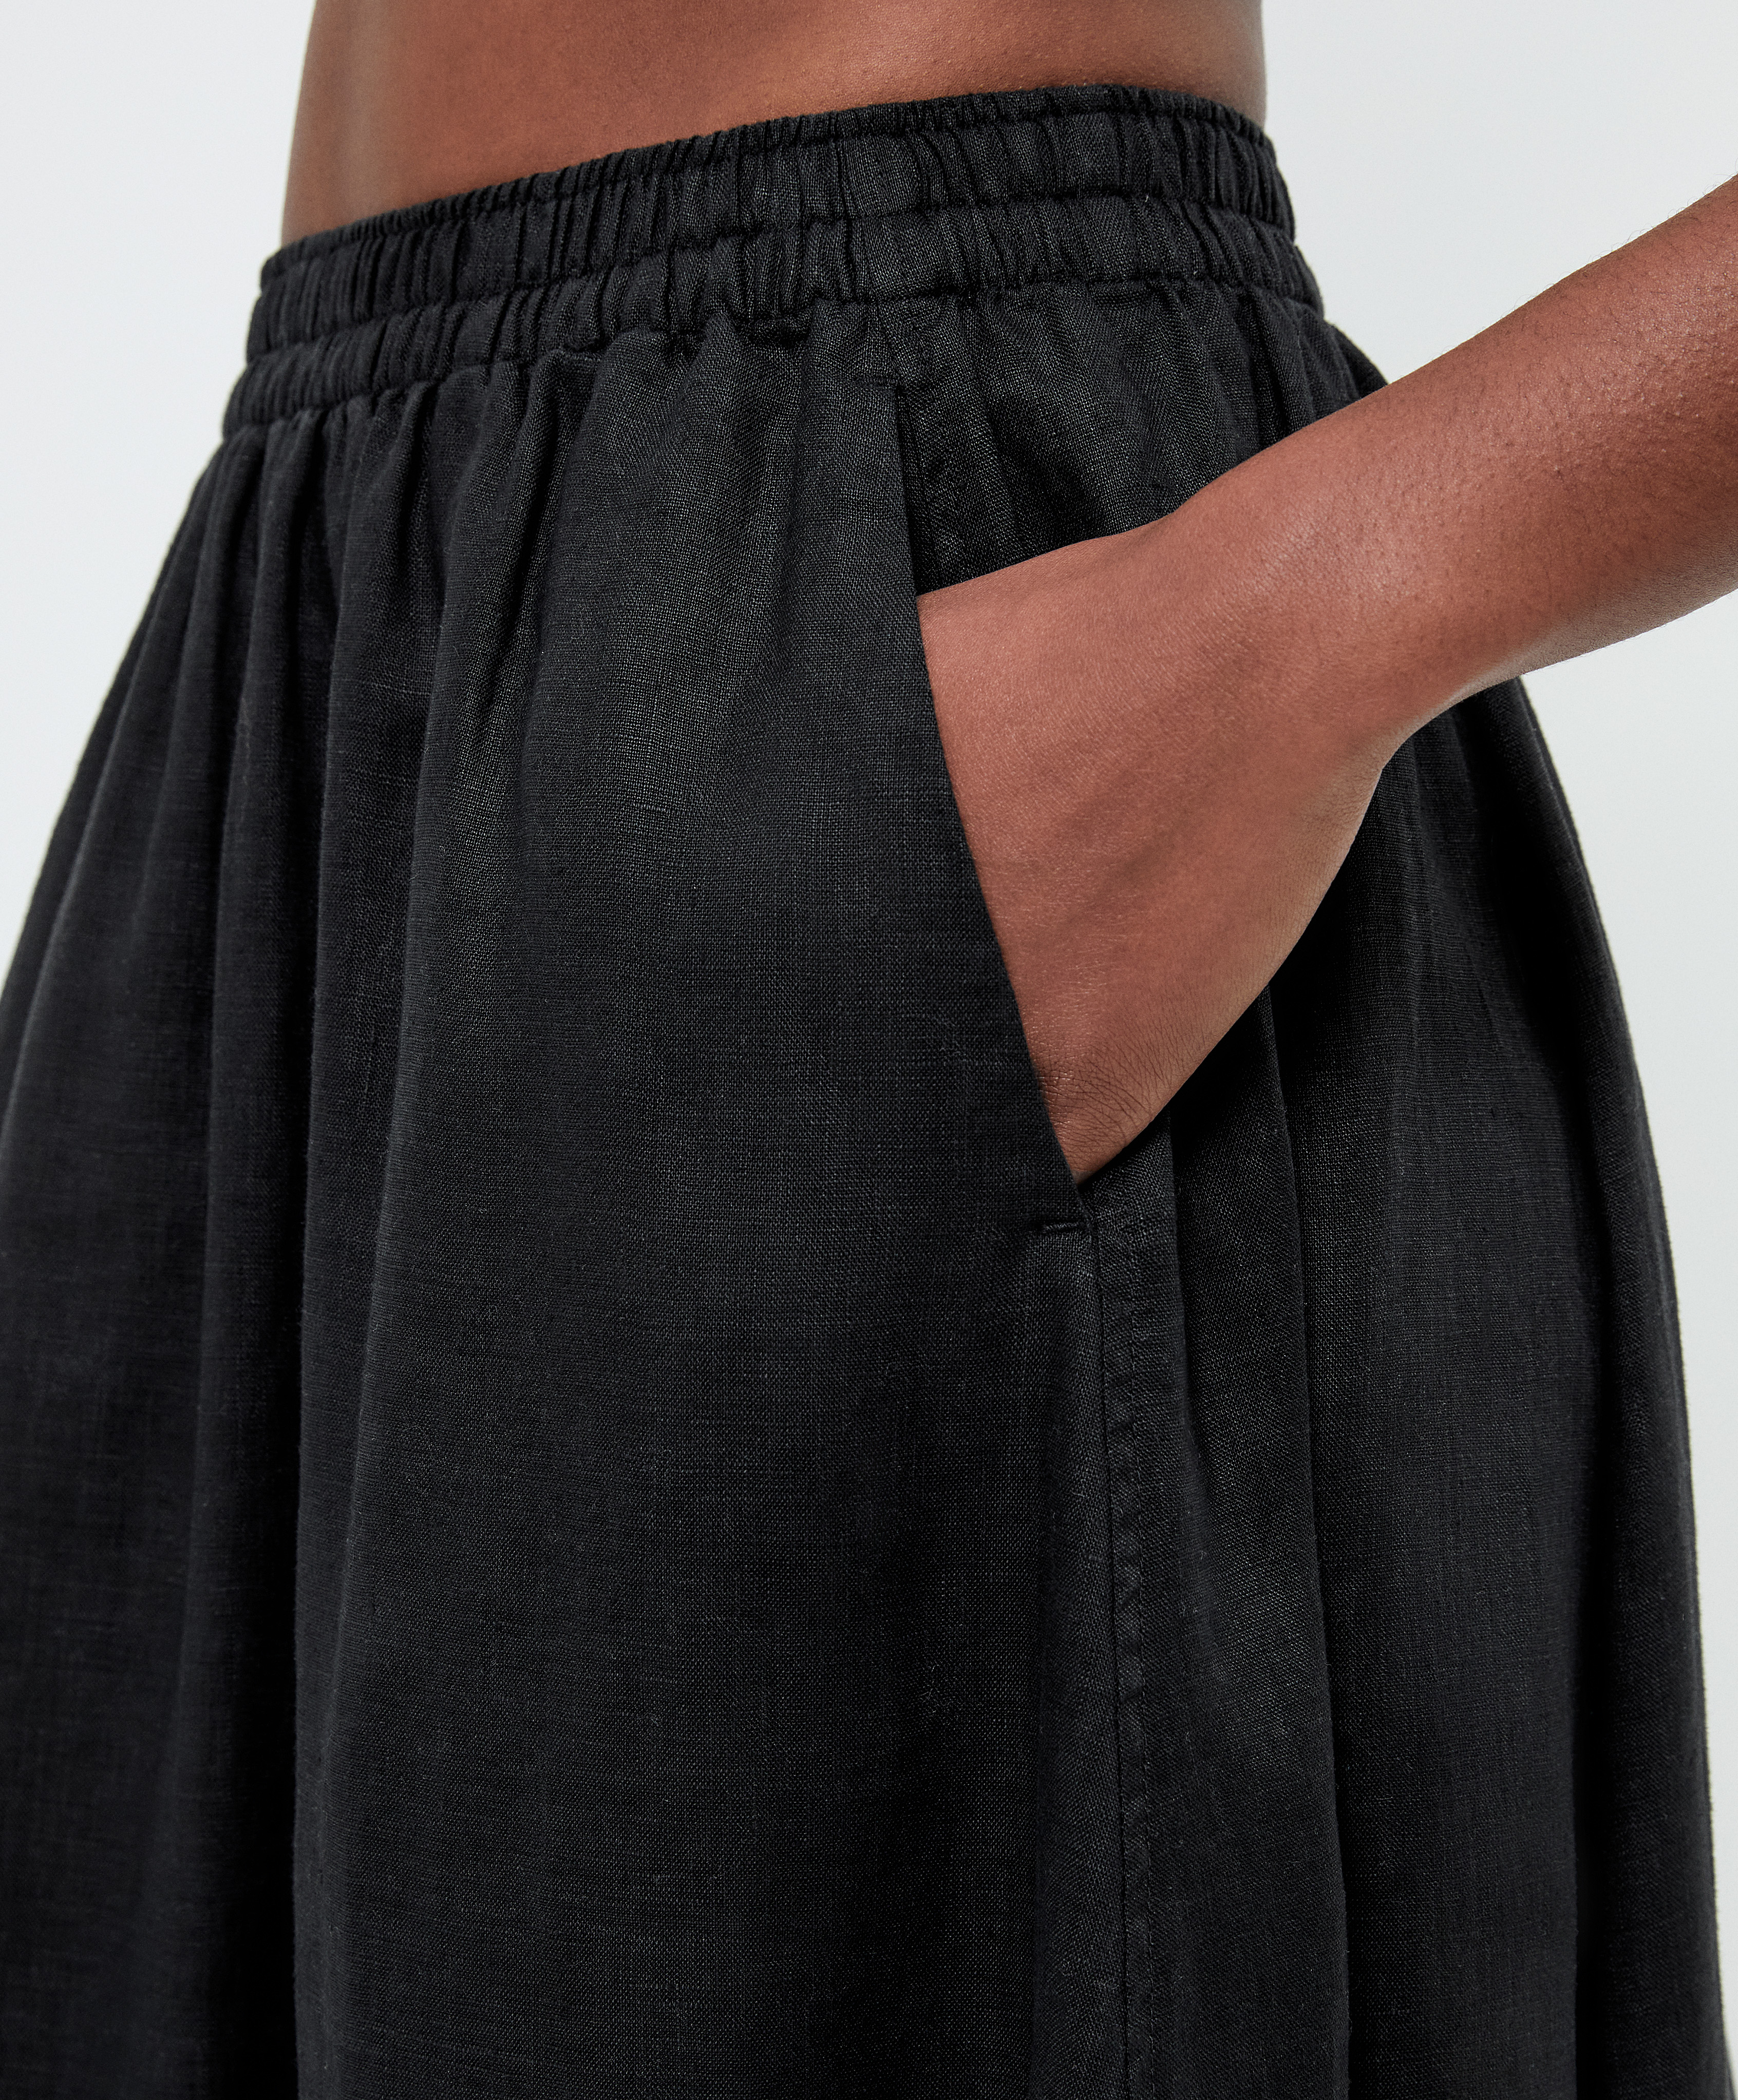 La falda maxi de Oysho estilizadora que las mujeres de 50 del norte  llevarán a diario con sandalias planas